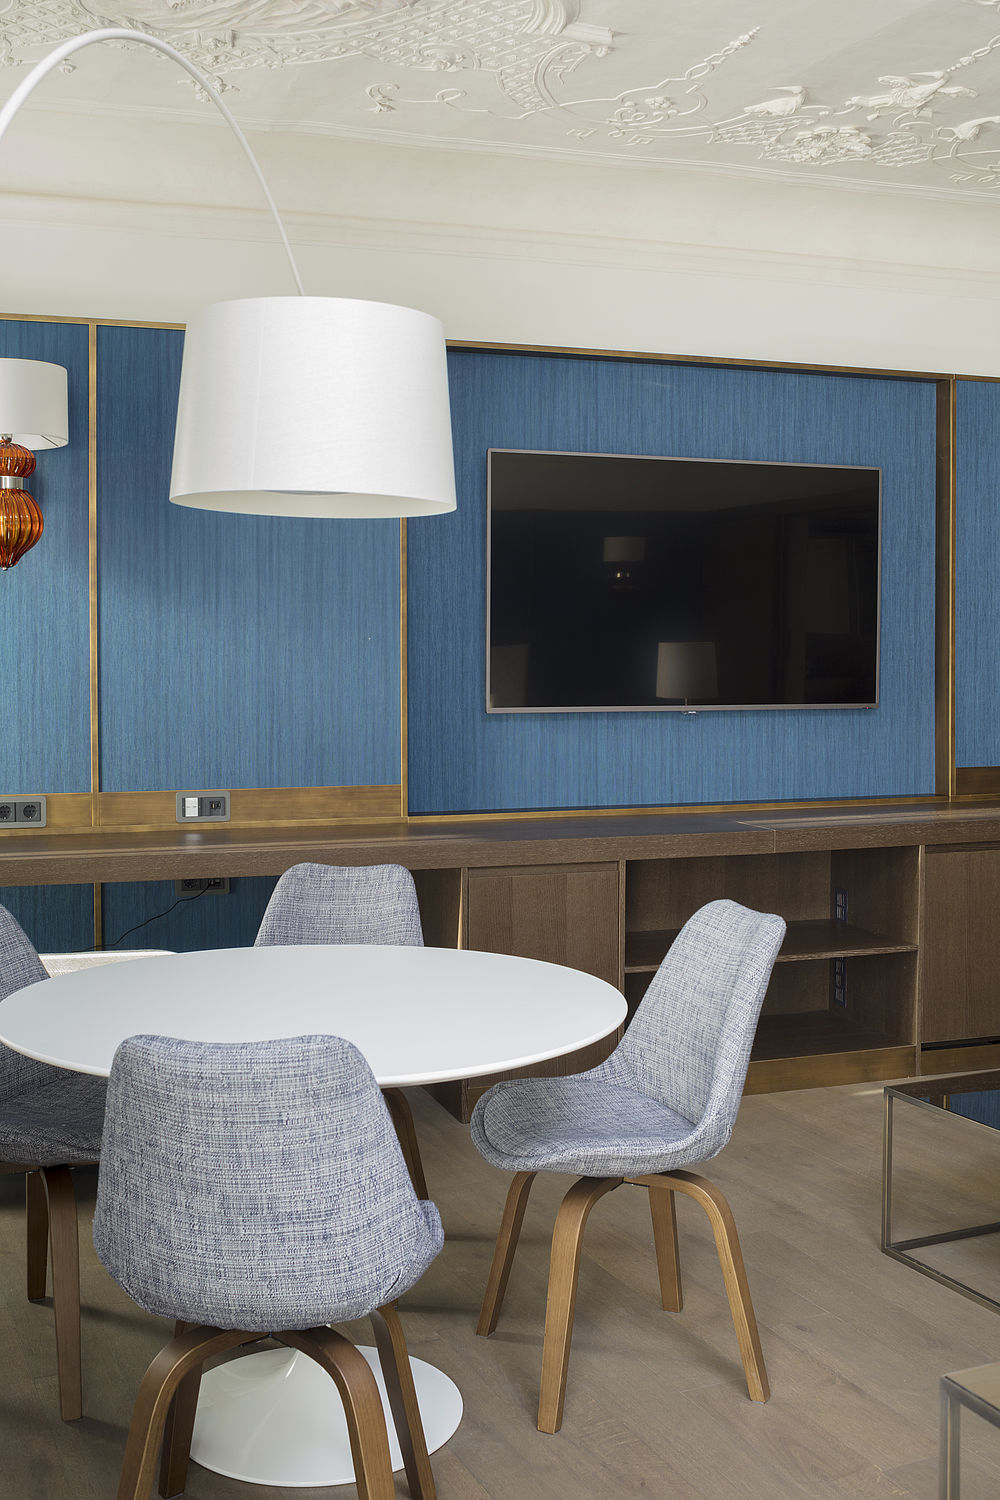 Der Wohnbereich der Honeymoon Suite ist ausgestattet mit großem Fernseher, rundem Tisch mit grauen Stühlen und holzbraunen Regalen